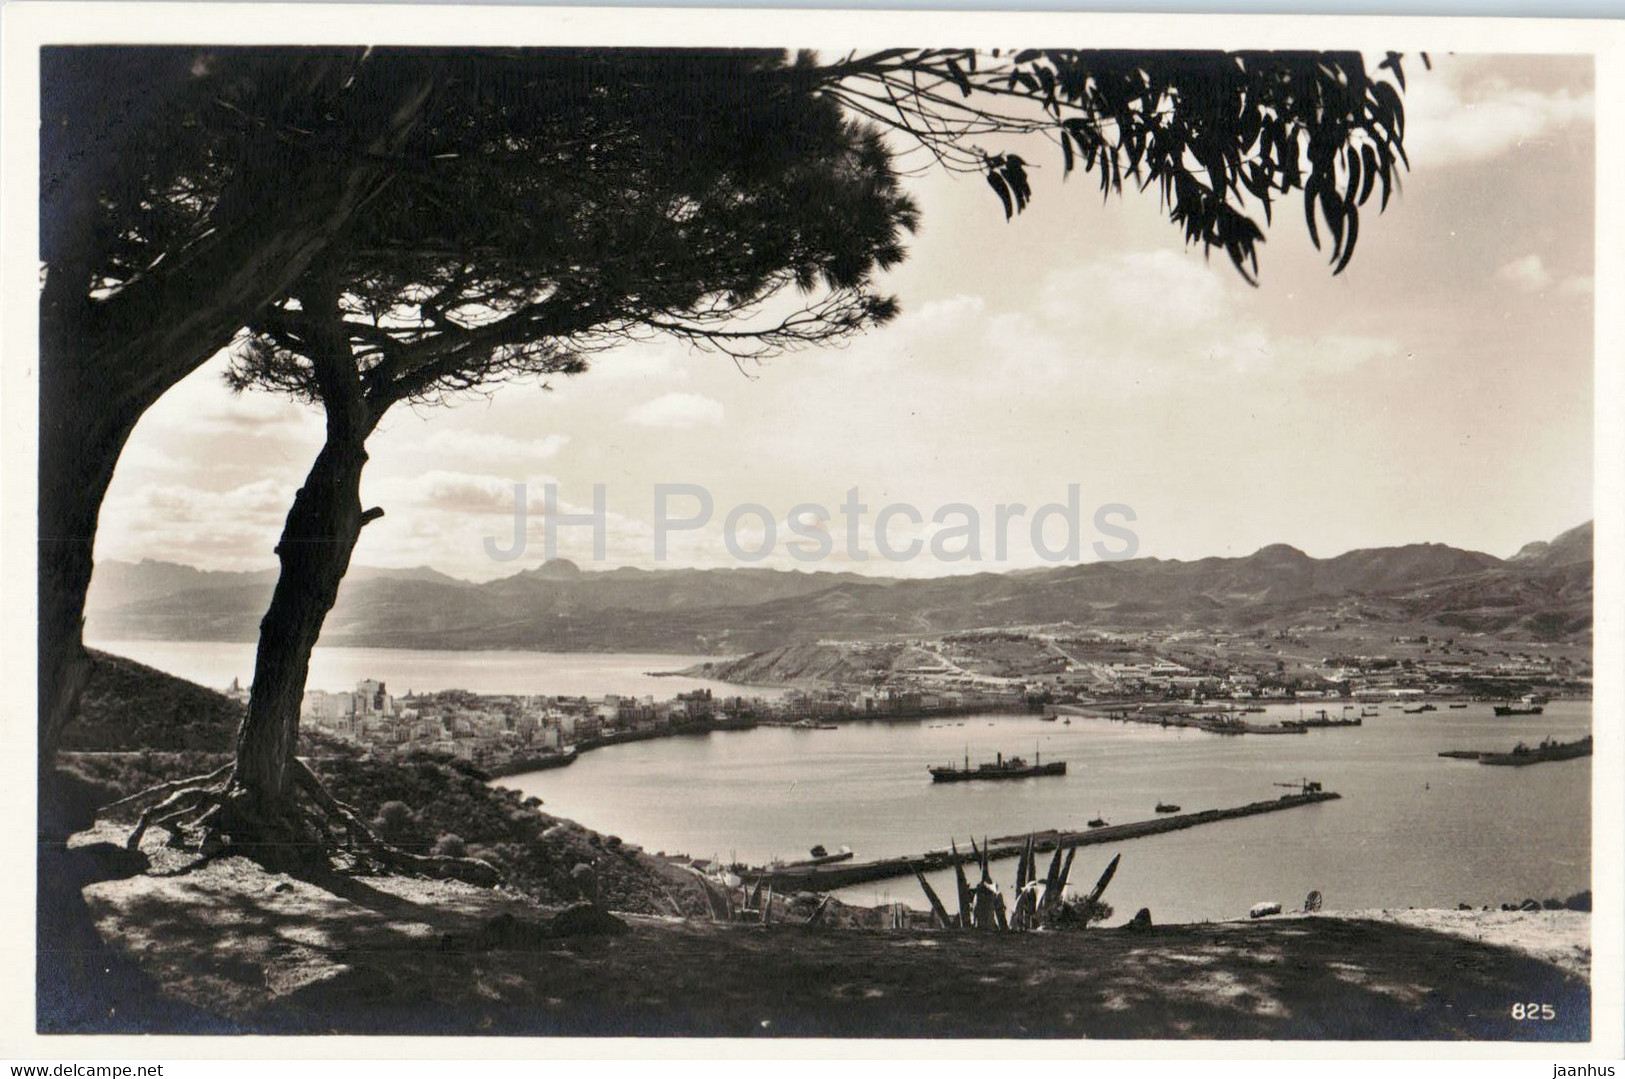 Ceuta - 825 - Old Postcard - Spain - Unused - Ceuta